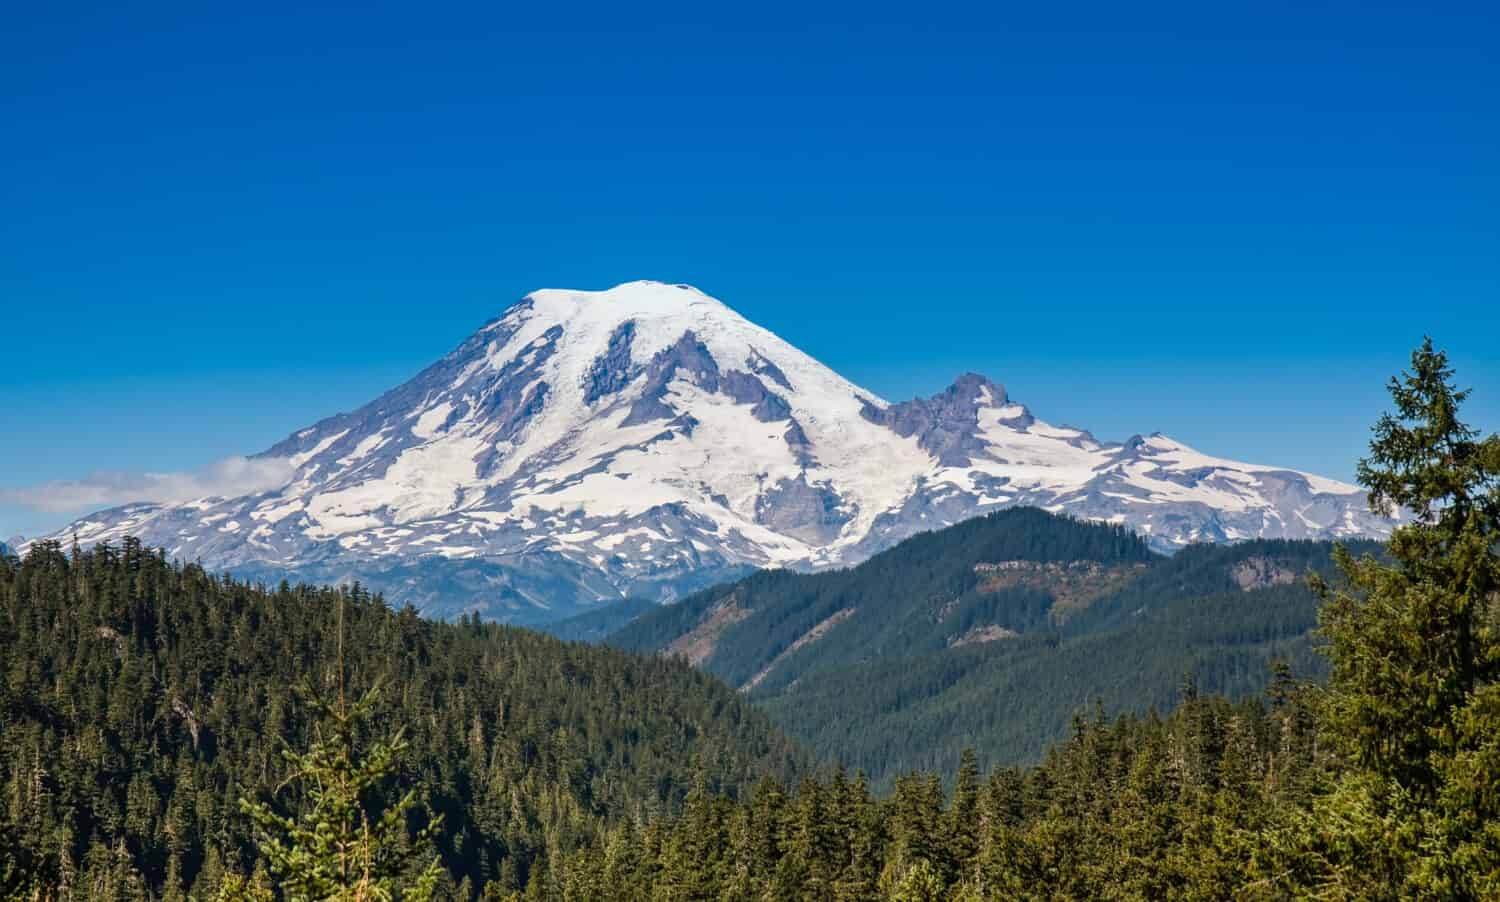 Il Monte Rainier domina le montagne circostanti a un'altitudine di 14.411 piedi. È considerato uno dei vulcani più pericolosi del mondo.